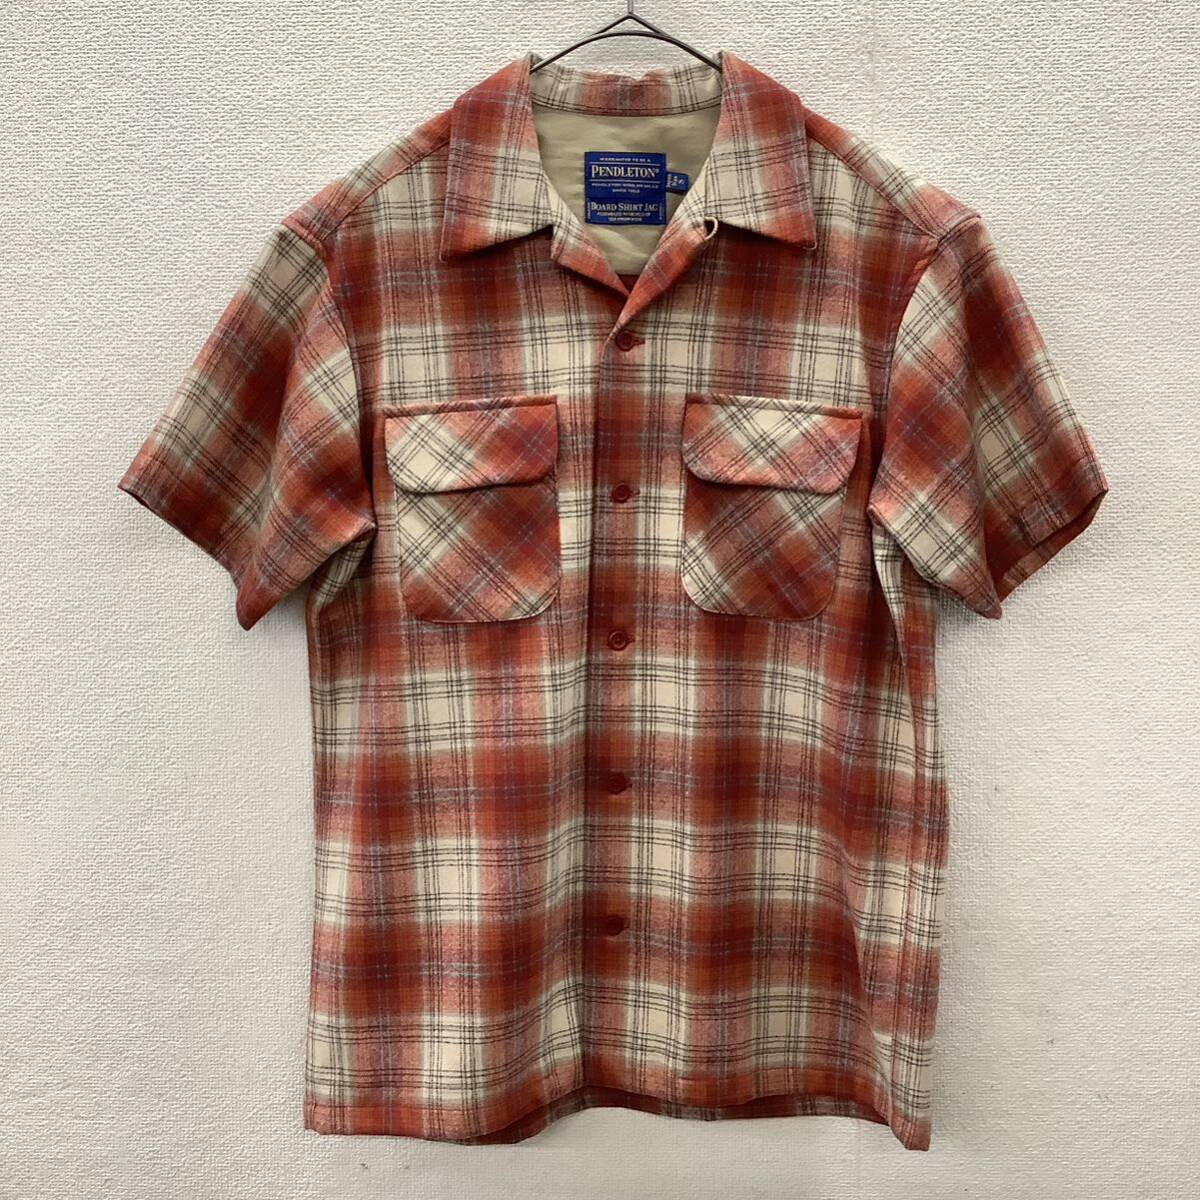 PENDLETON ペンドルトン BOARD SHIRT ボードシャツ 半袖 ネルシャツ ウール チェック柄 size S 78490の画像2